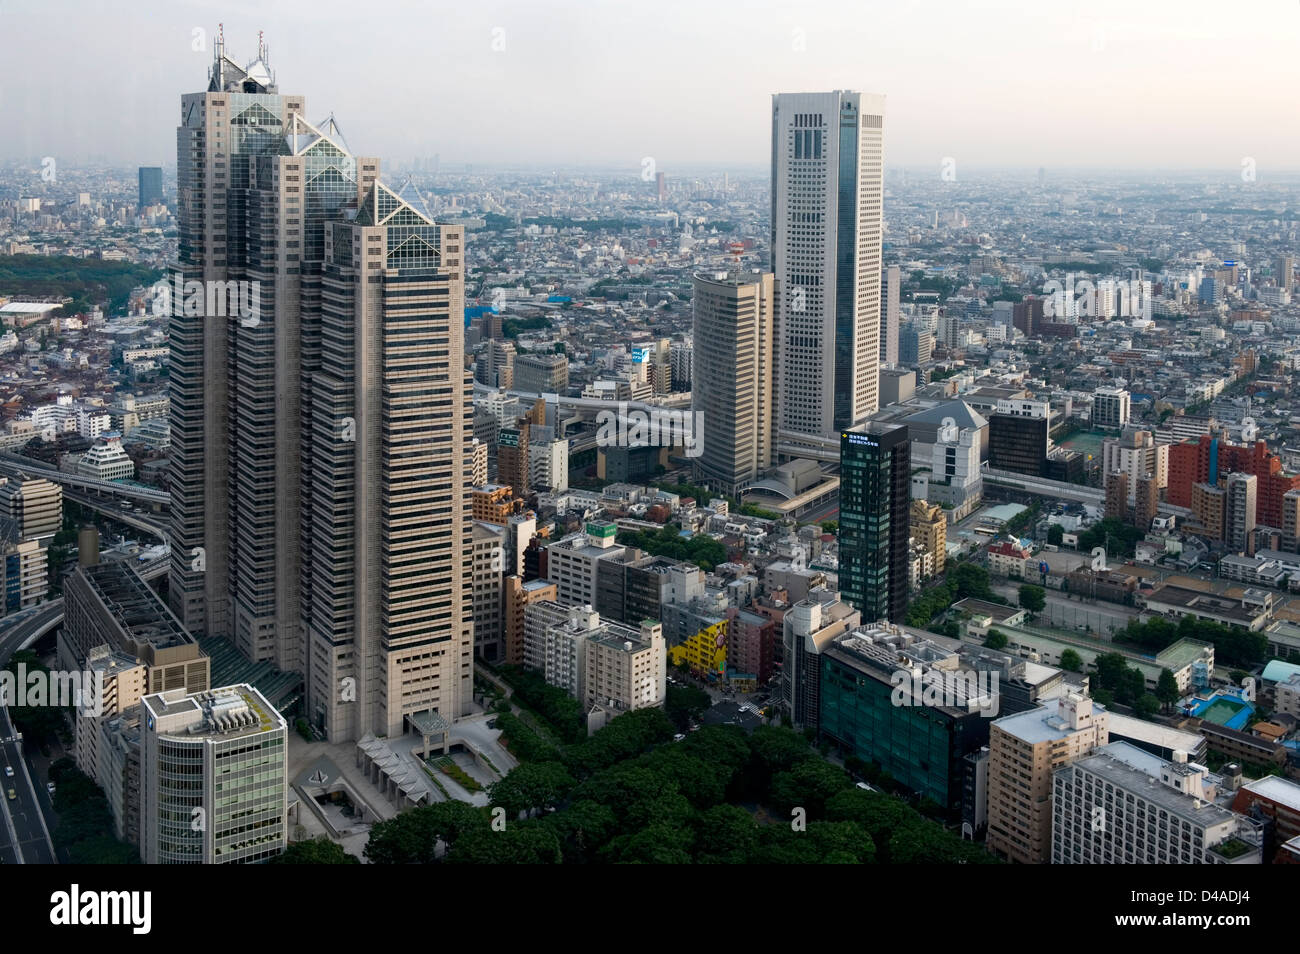 Luftaufnahme der Innenstadt von Tokio Skyline der Stadt mit Hochhaus Gebäuden einschließlich der Park Hyatt Hotel Tower und Zersiedelung Stockfoto